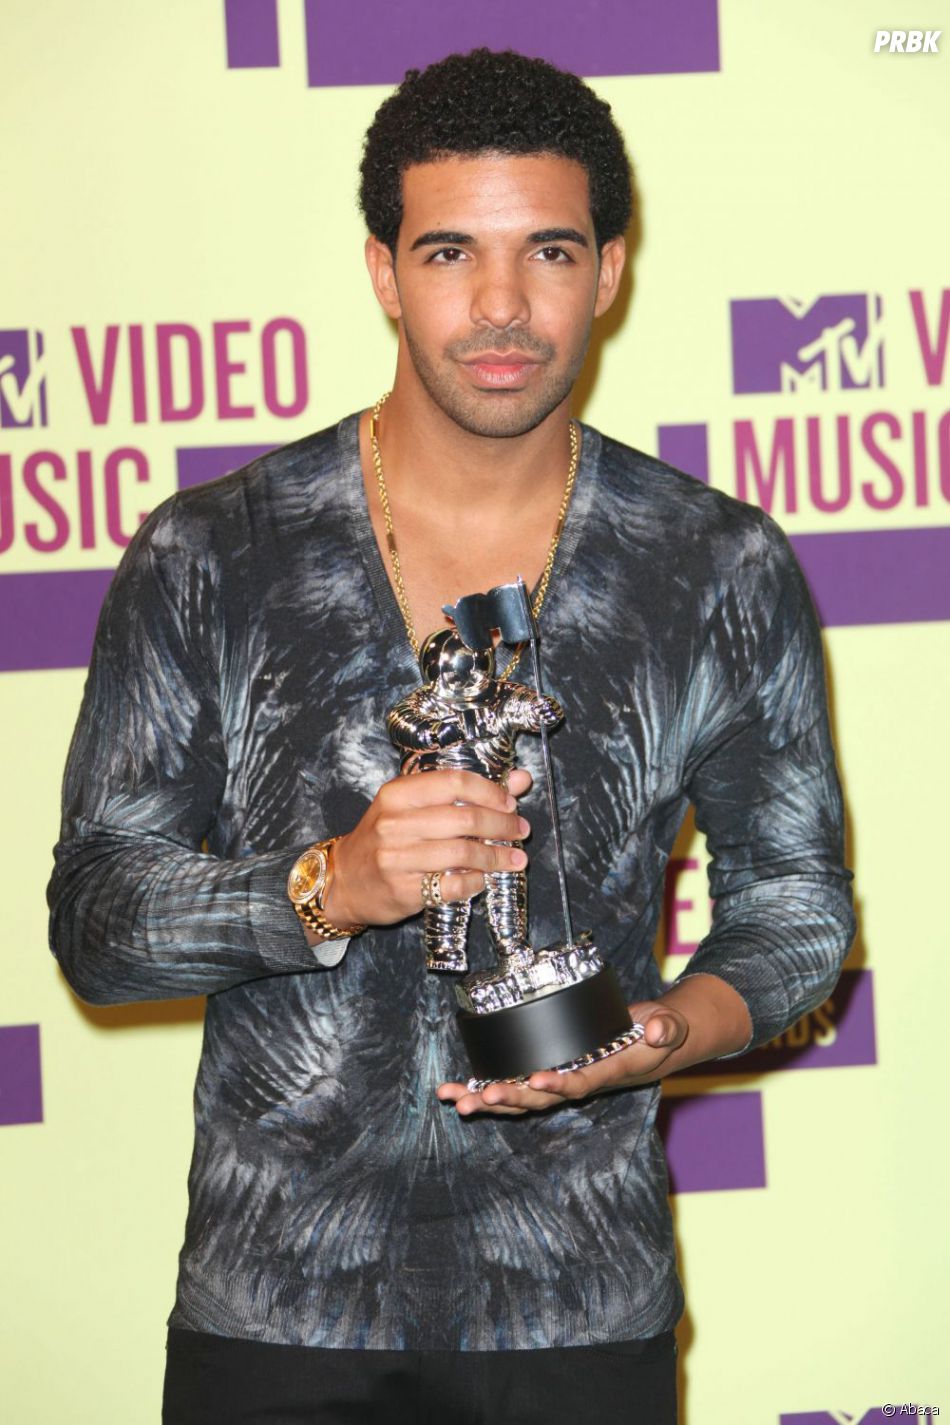 Drake hype music video - sensesubtitle